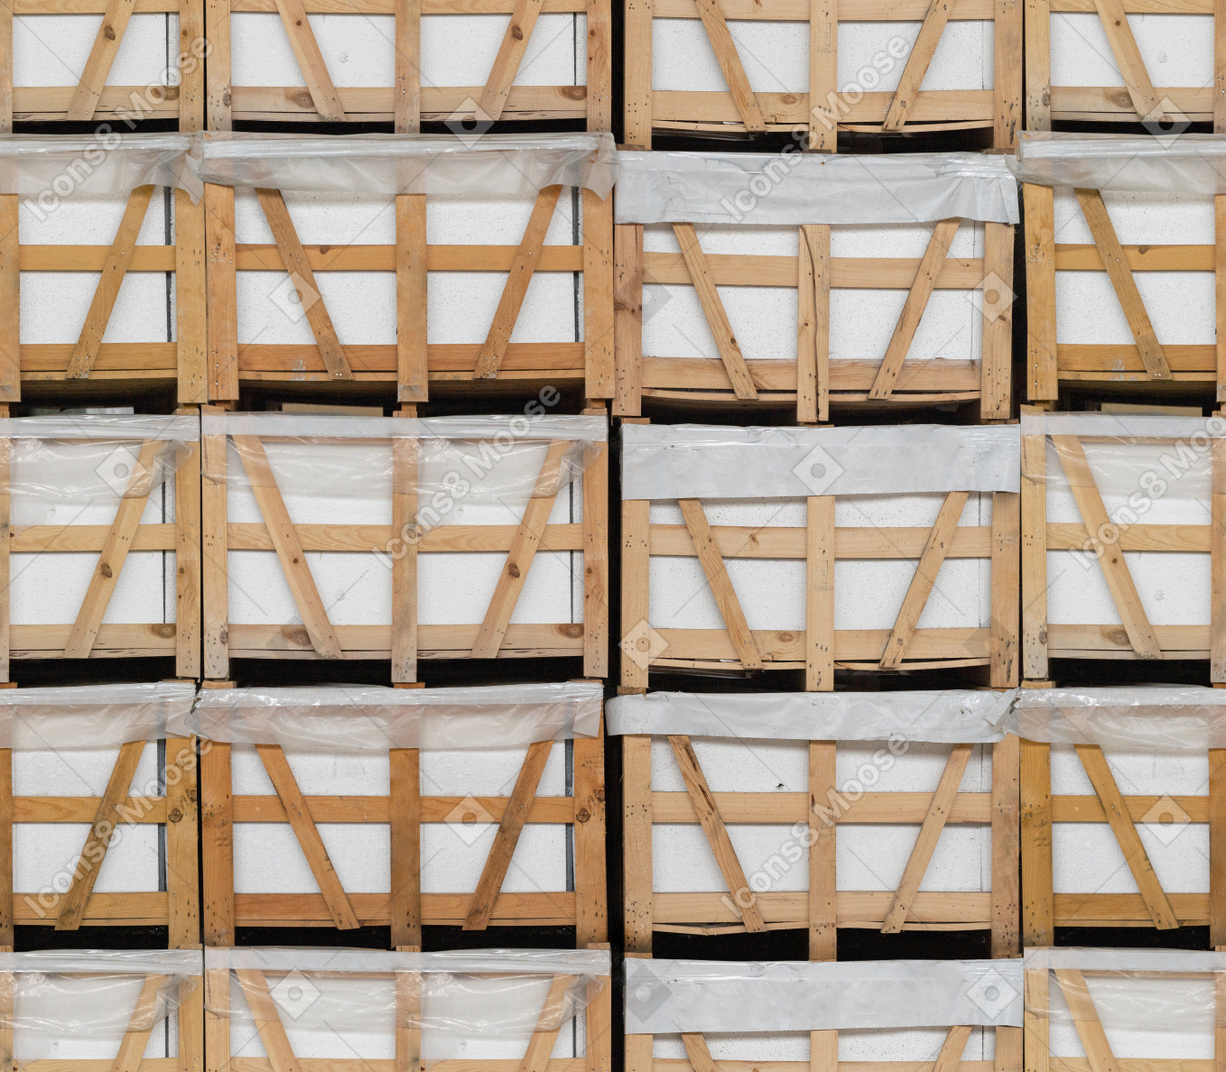 Briques blanches stockées dans des bacs en bois